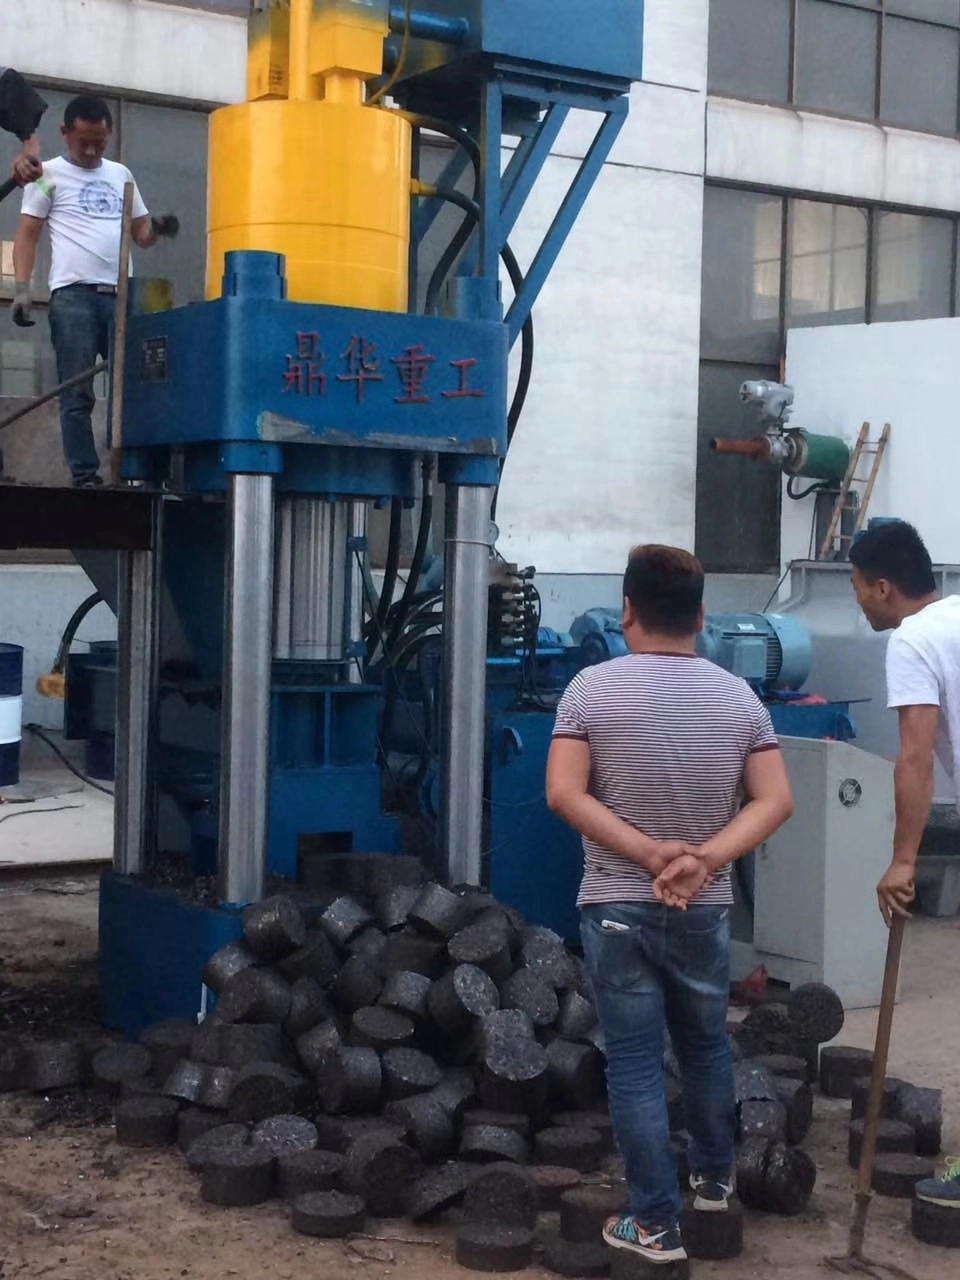 500t Metal Hydraulic Briquetting Press Metal Scrap Briquette Machine